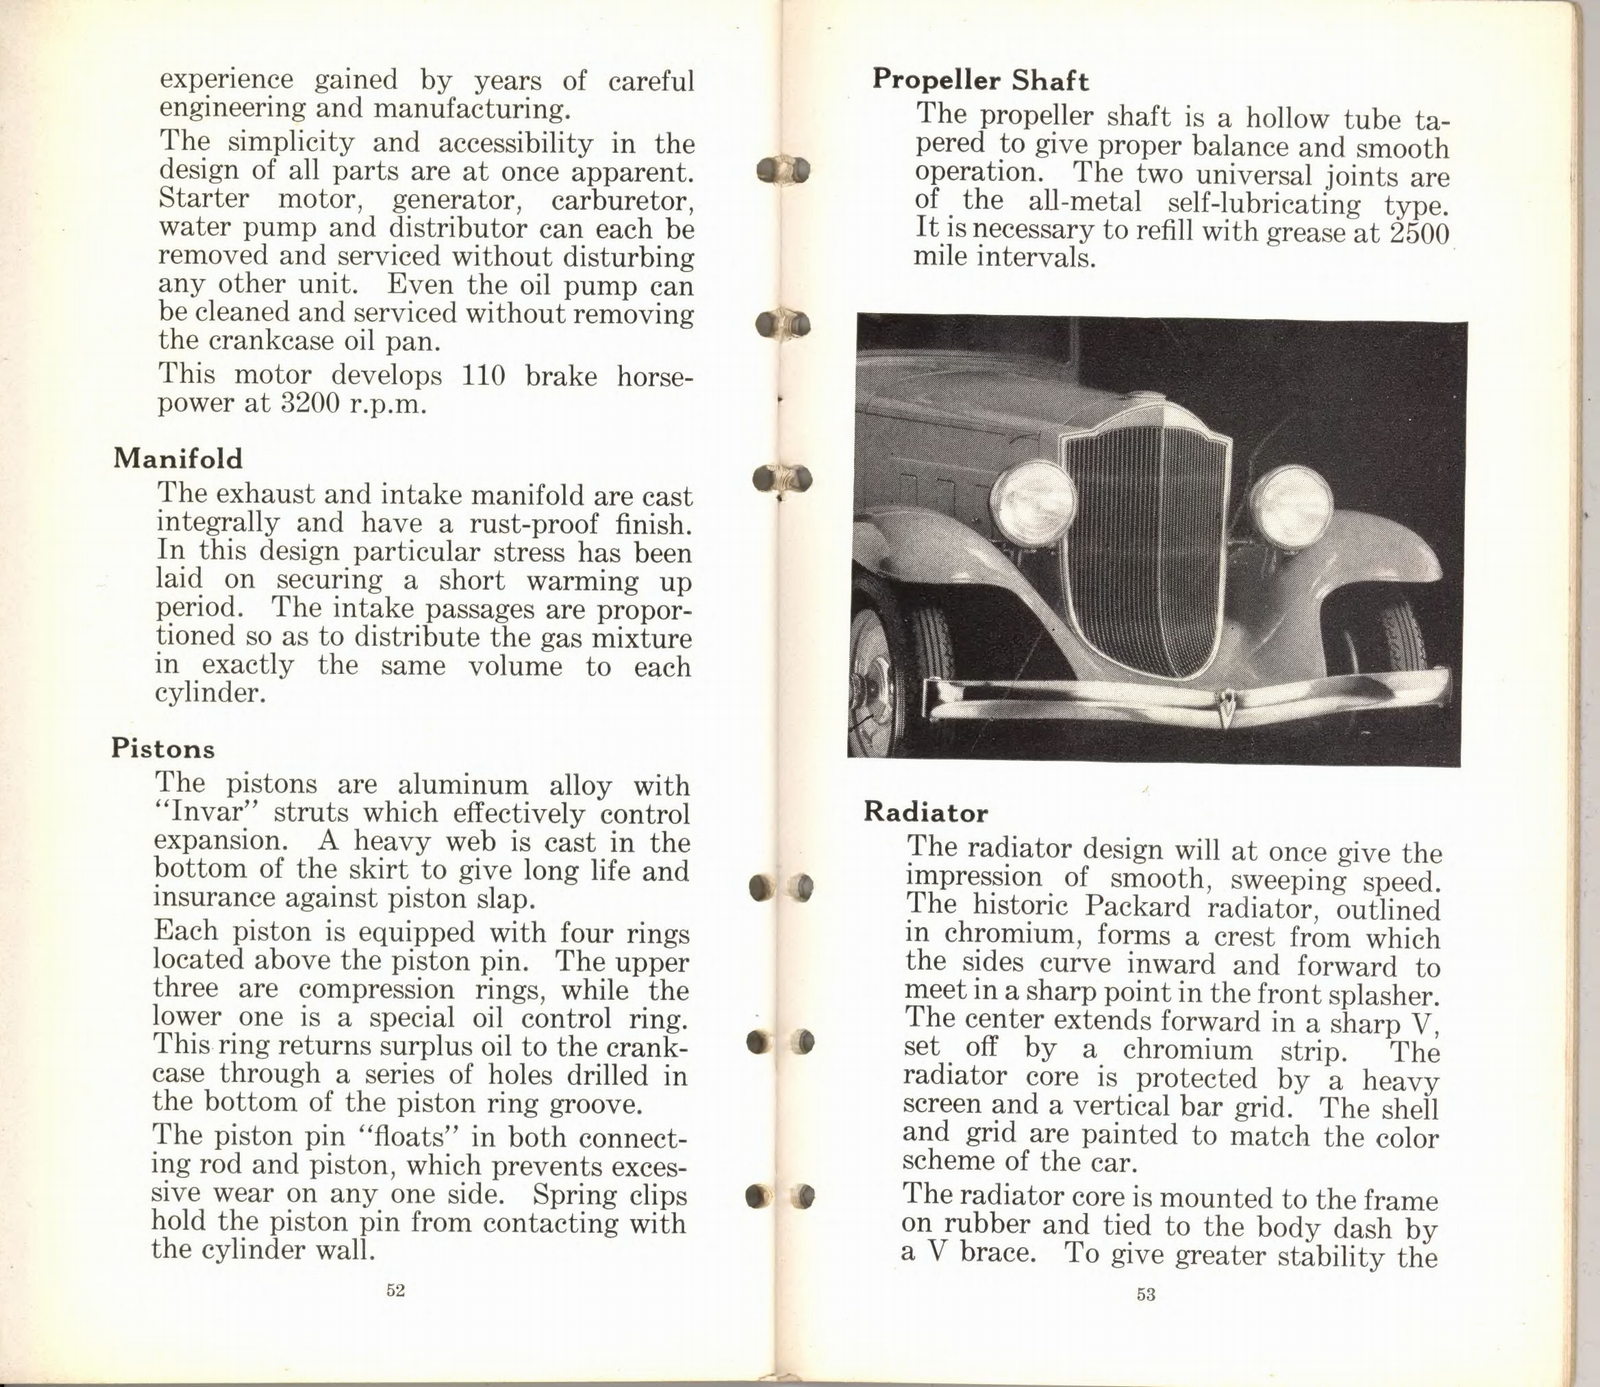 n_1932 Packard Light Eight Facts Book-52-53.jpg